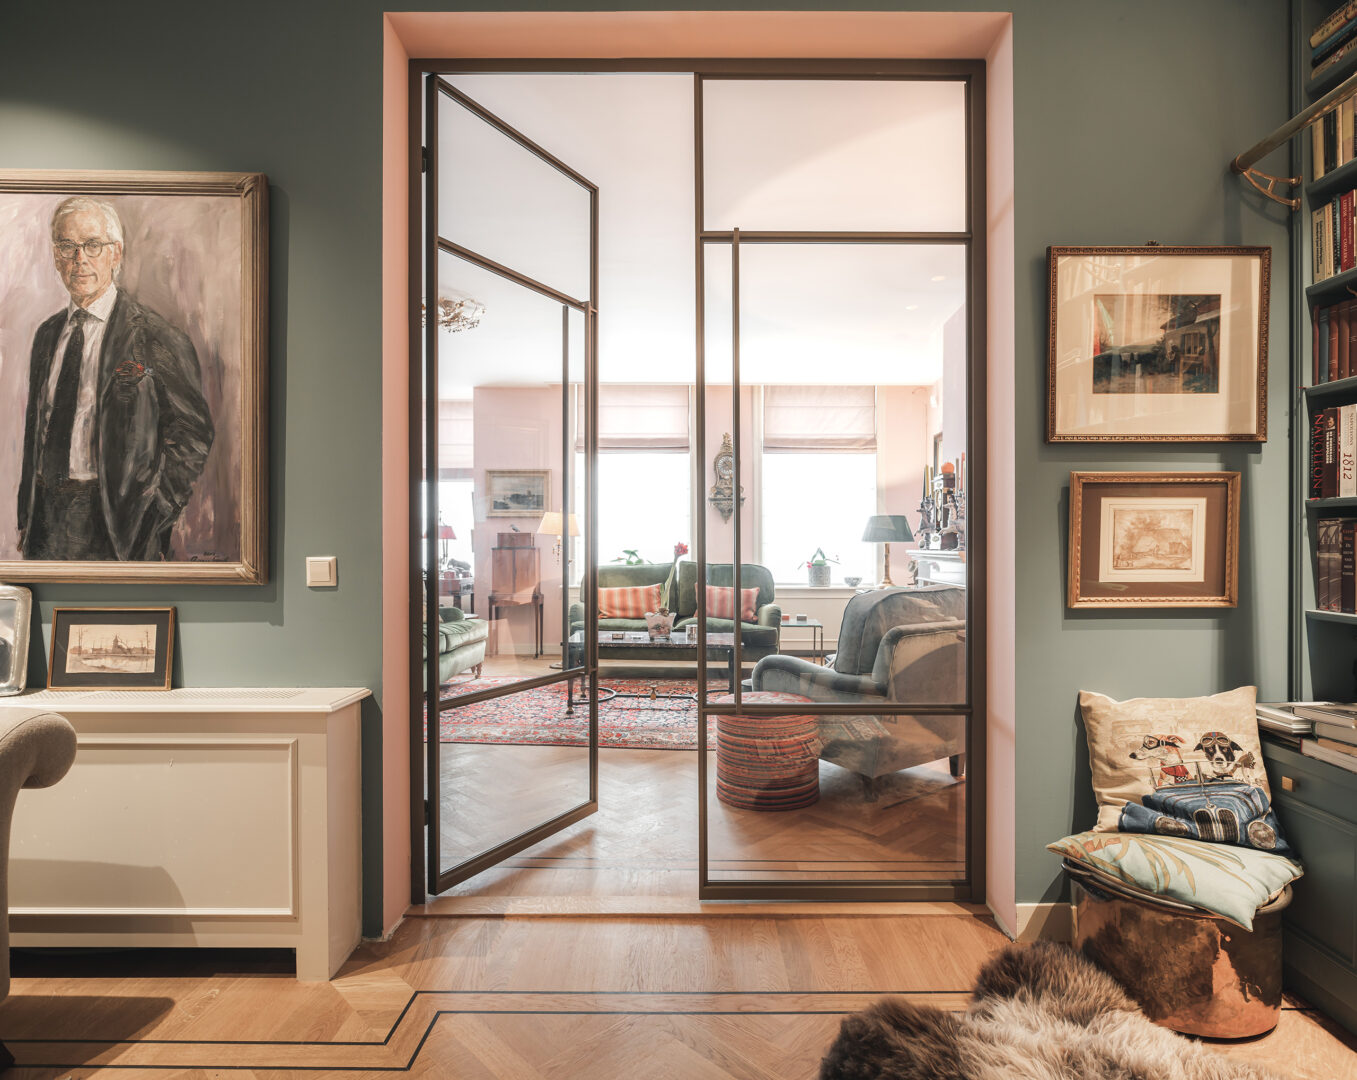 Dubbele scharnierdeur van Blecks in kleurrijke woning in Den Haag